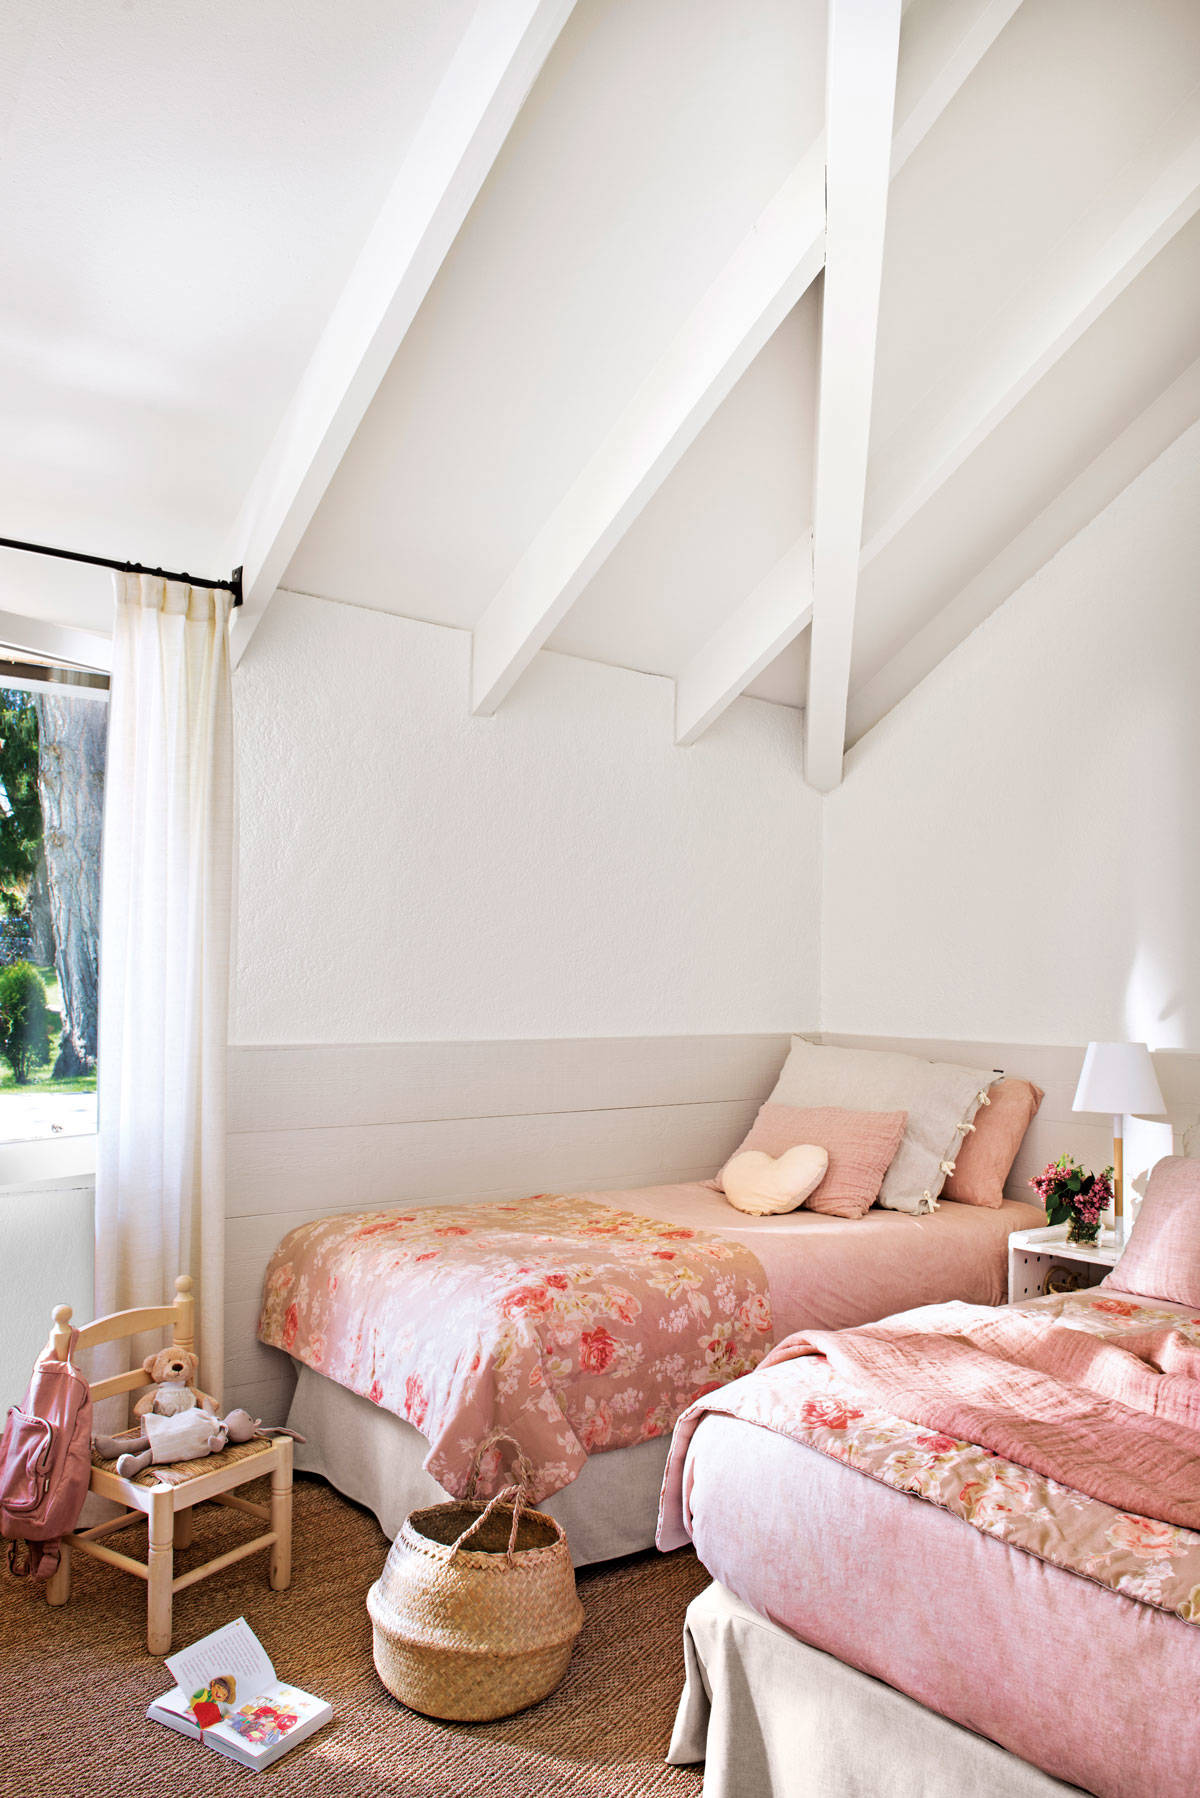 Habitacion infantil con arrimadero, techo abuhardillado y ropa de cama rosa con estampado floral.